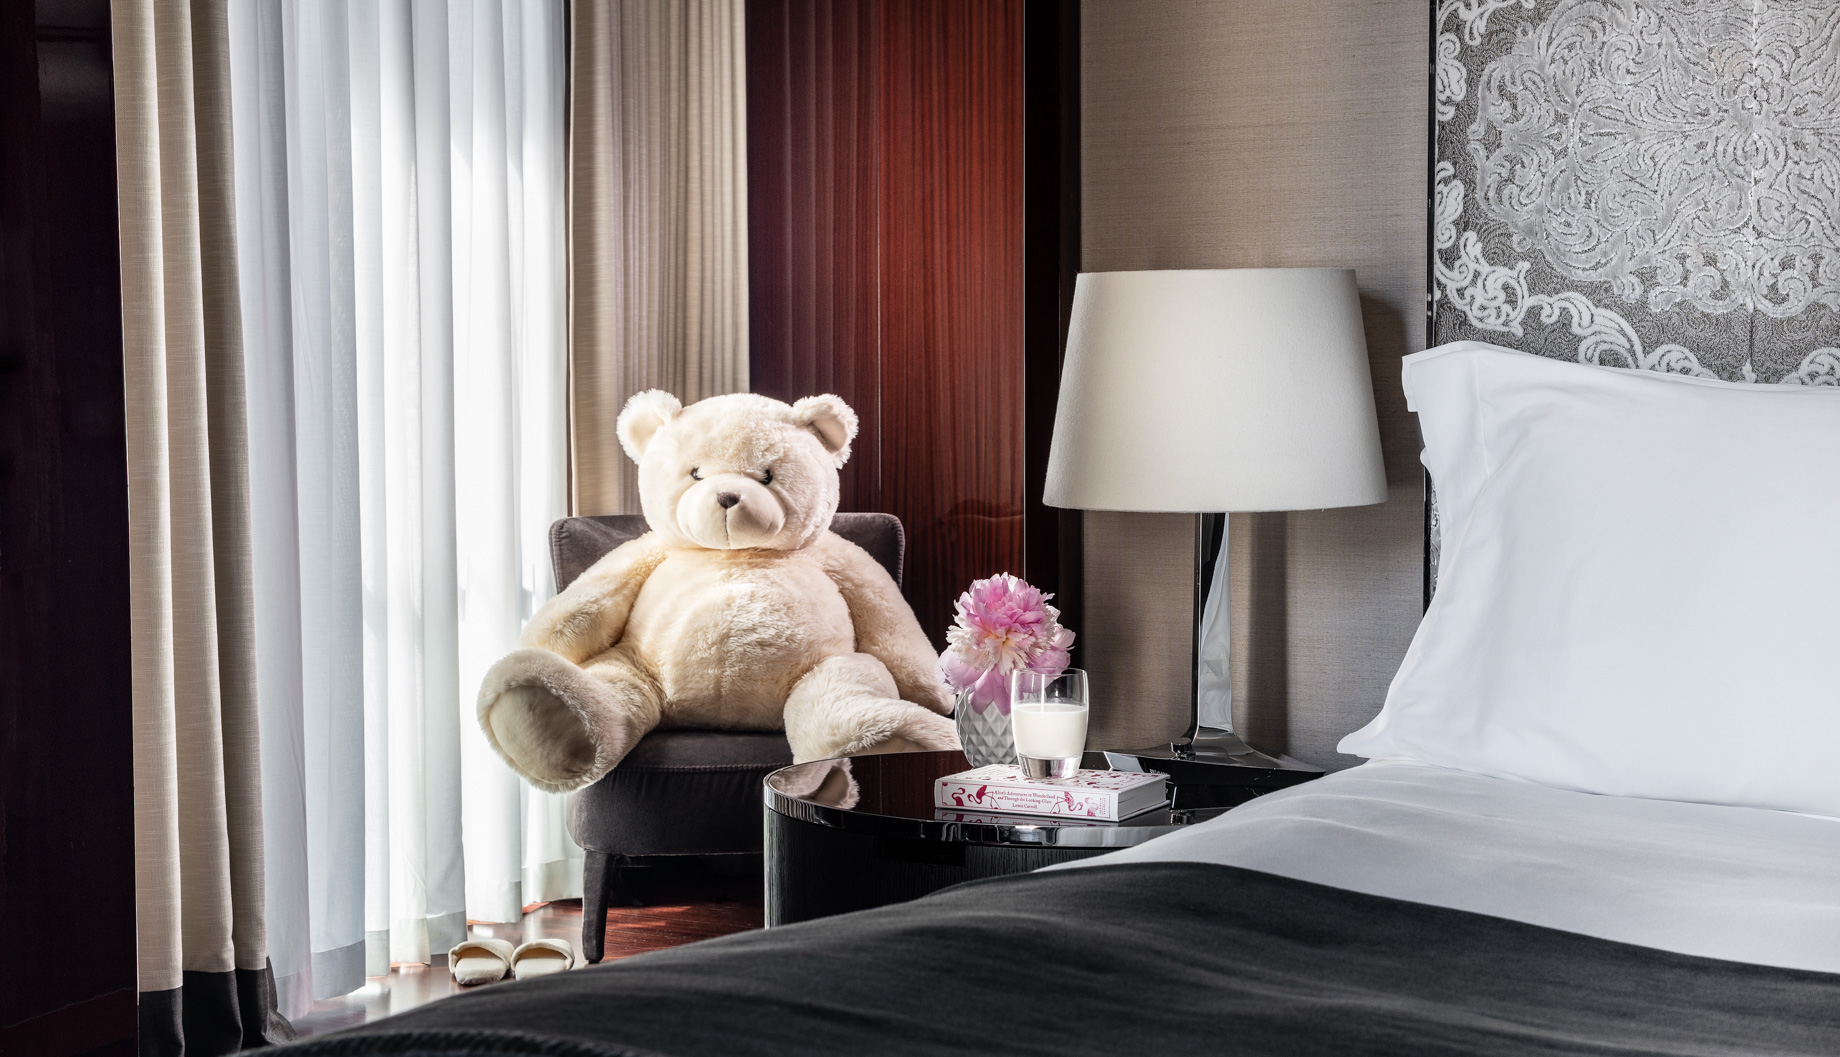 Bvlgari Hotel London – Knightsbridge, London, UK – Bvlgari Hotel Family Teddy